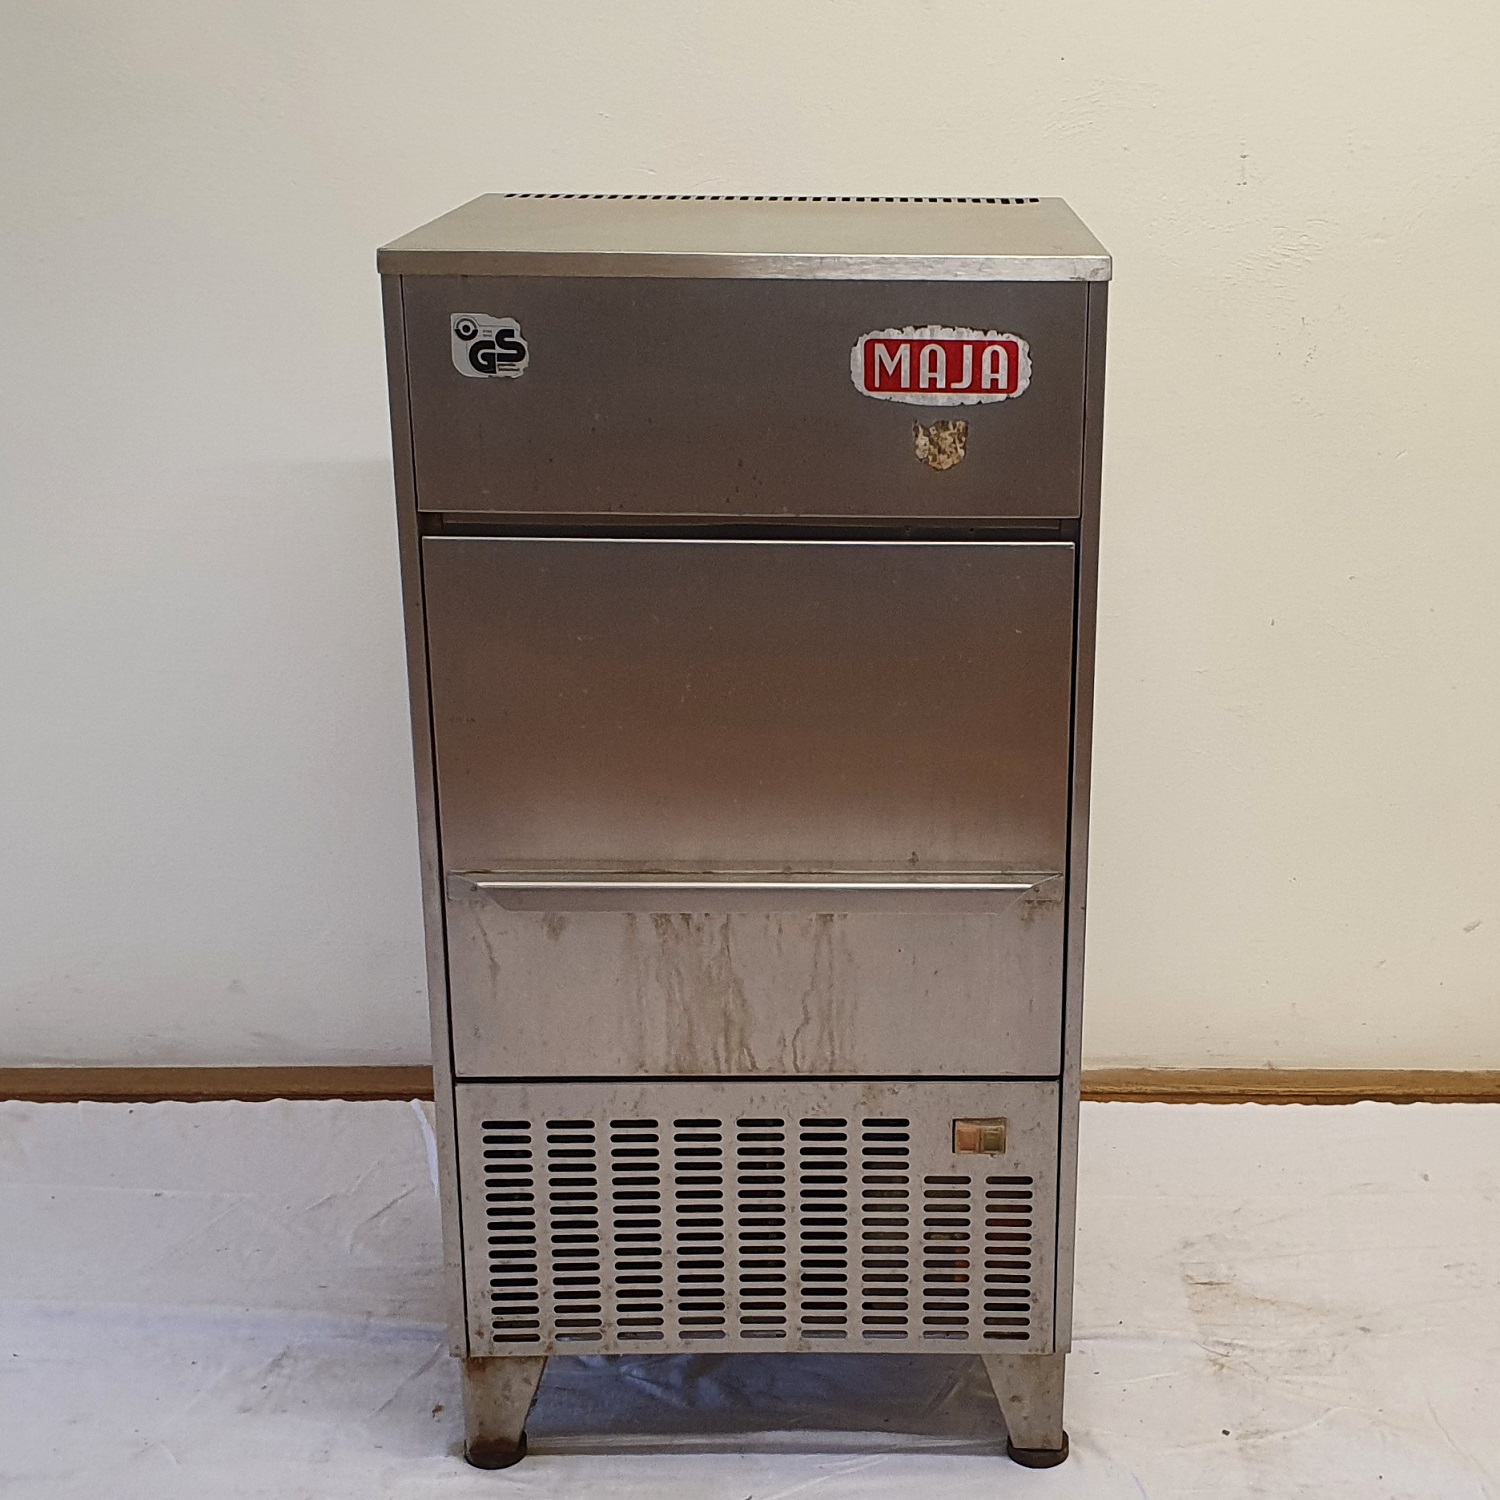 Scherbeneisautomat Maja SA 60 Eismaschine zur Herstellung von Scherbeneis